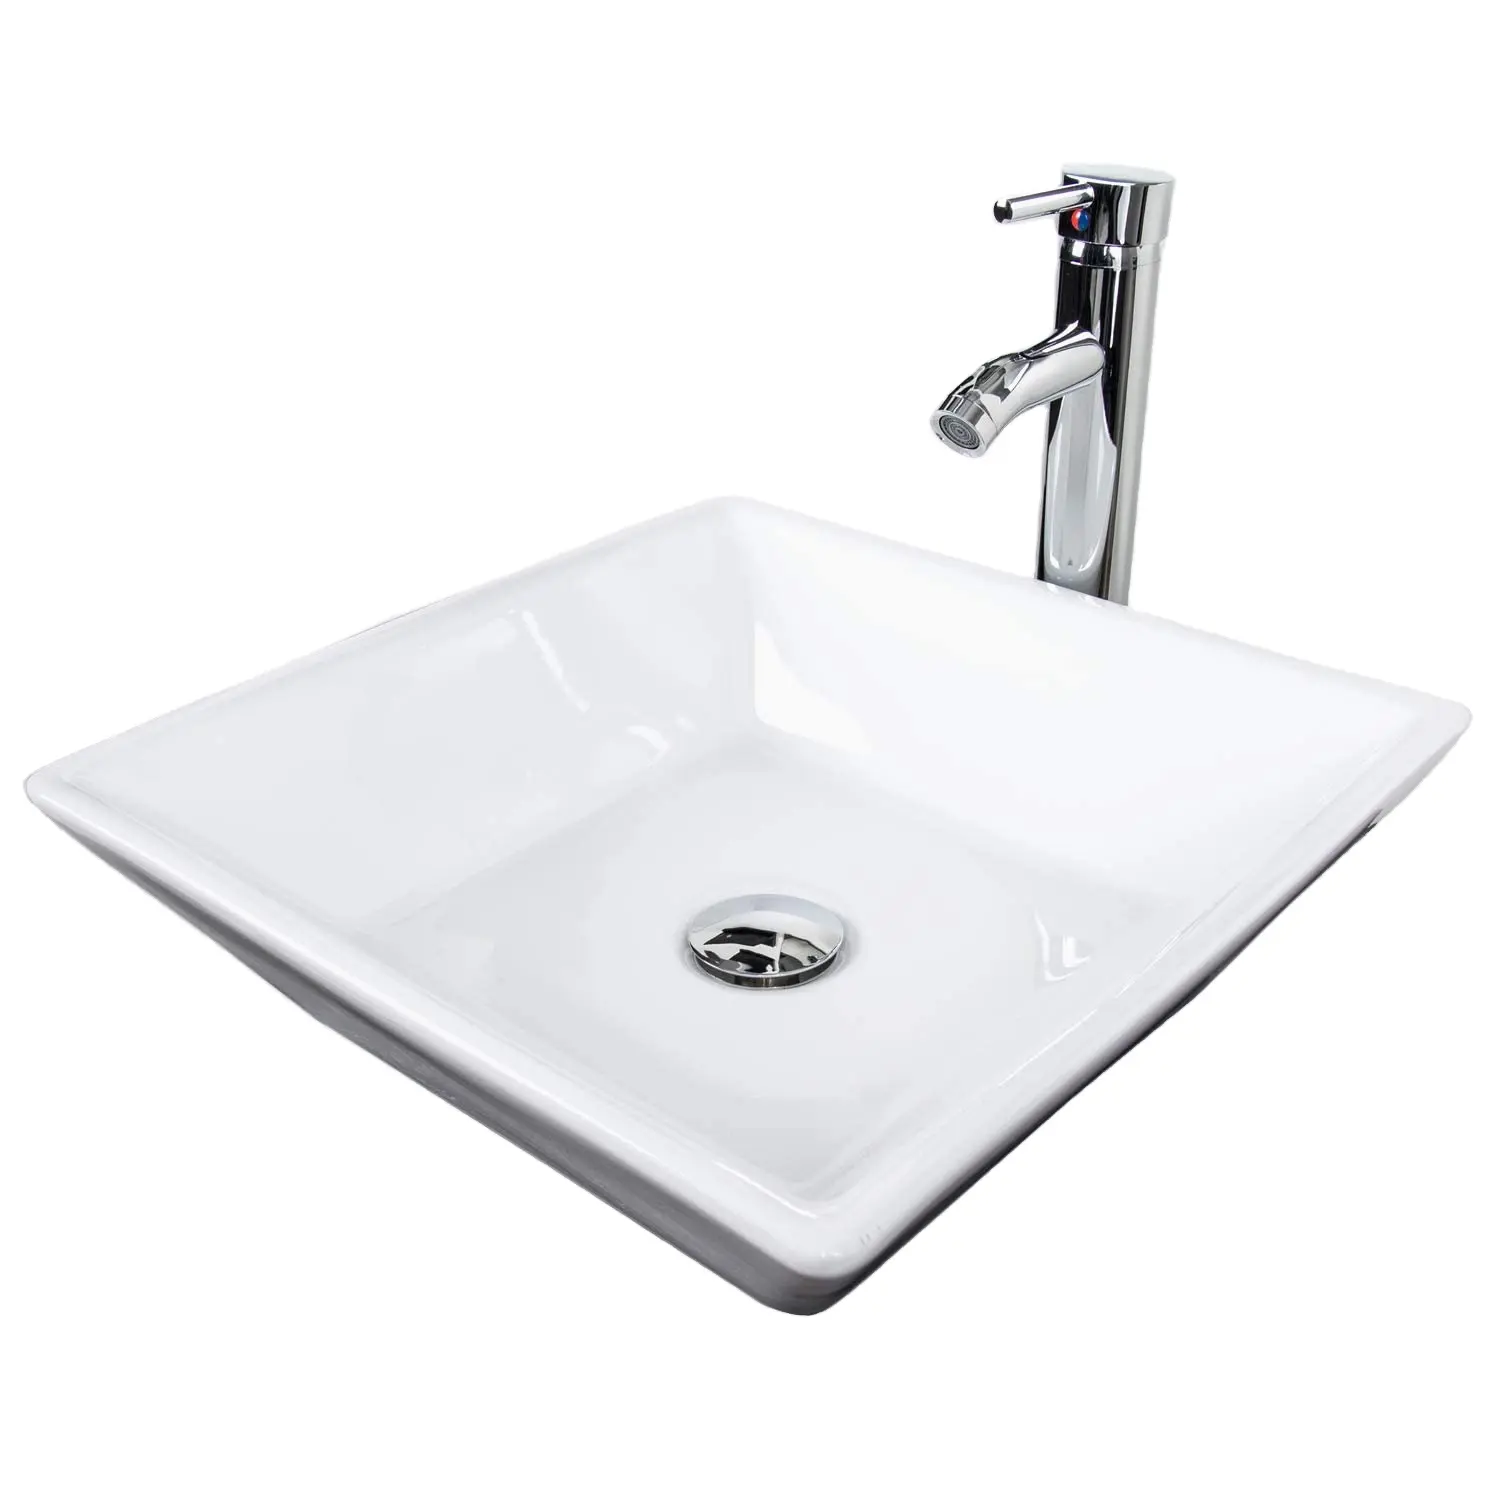 White Square Ceramic Wash Basin Bathroom Countertop Vessel Sink